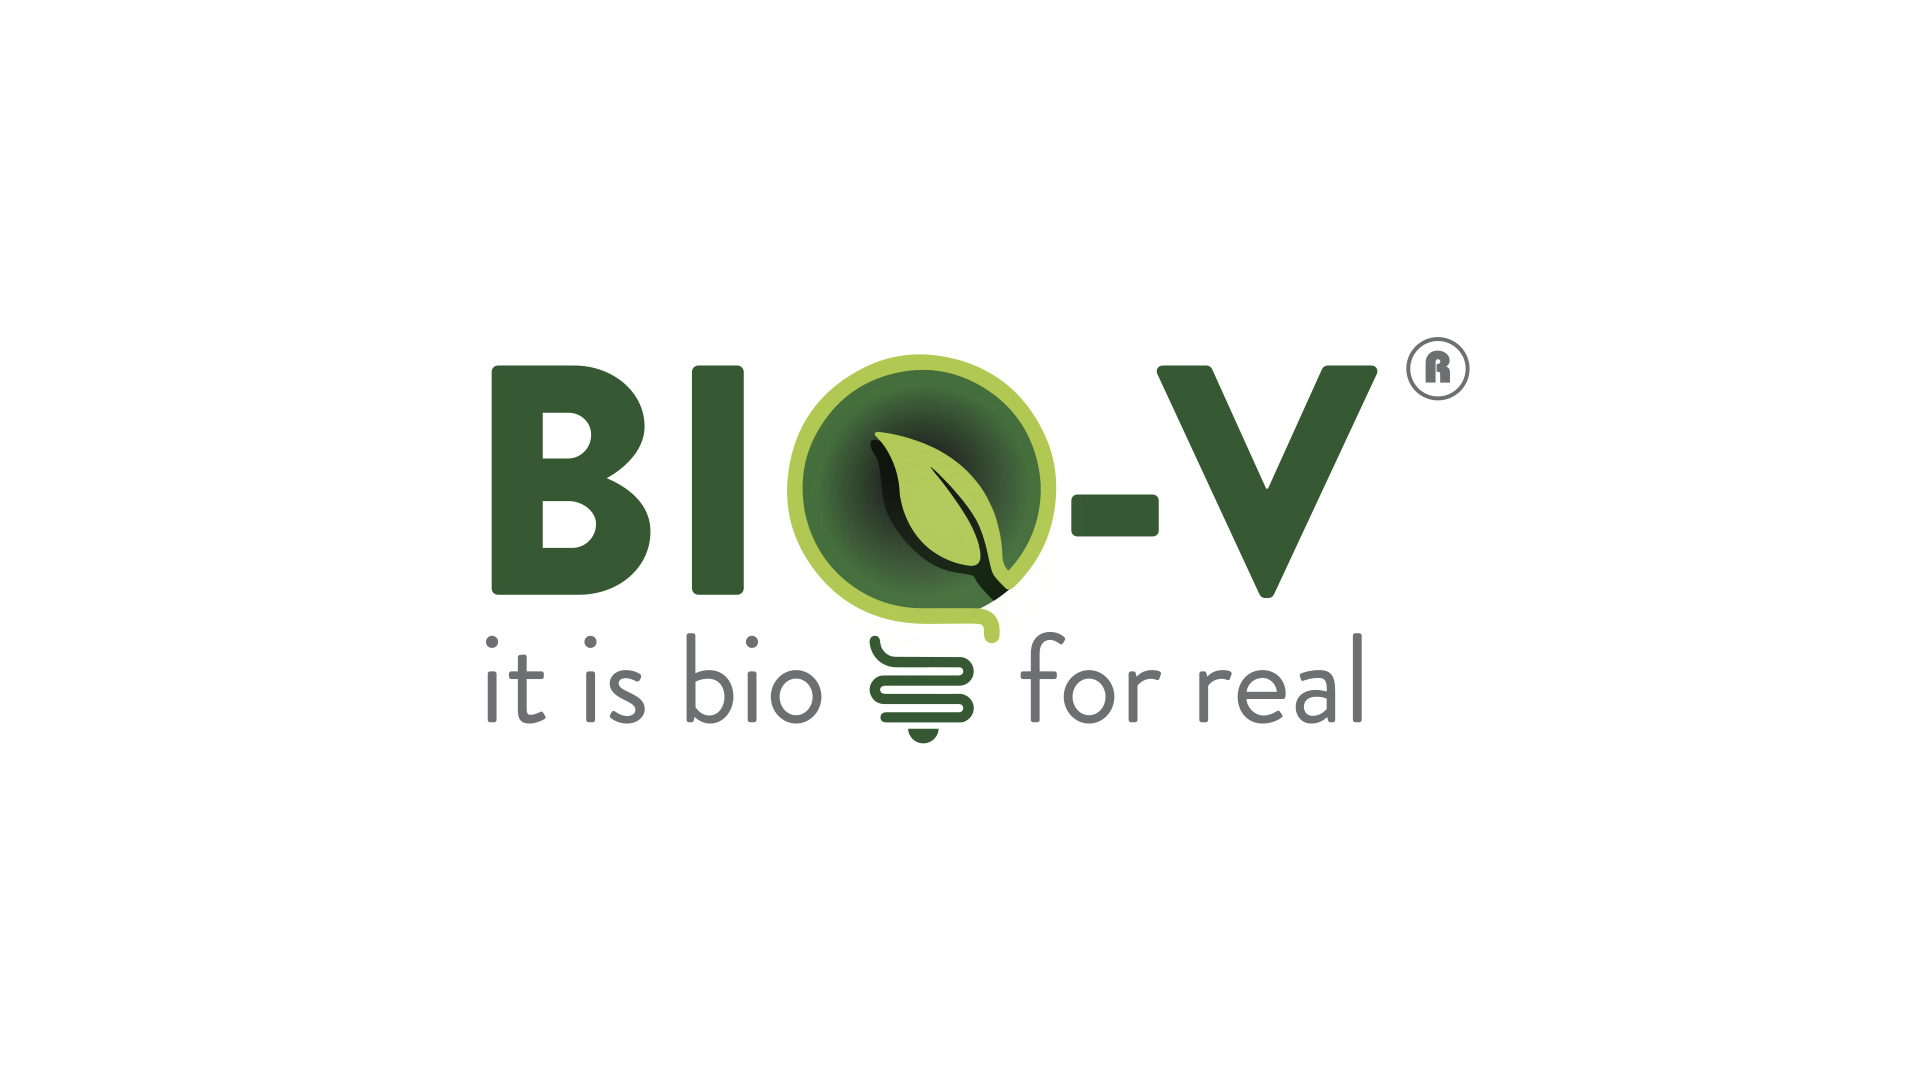 Controlpack da un paso más en su estrategia sostenible y amplía su catálogo con los nuevos embalajes de plástico biodegradable de acción acelerada Bio-V.